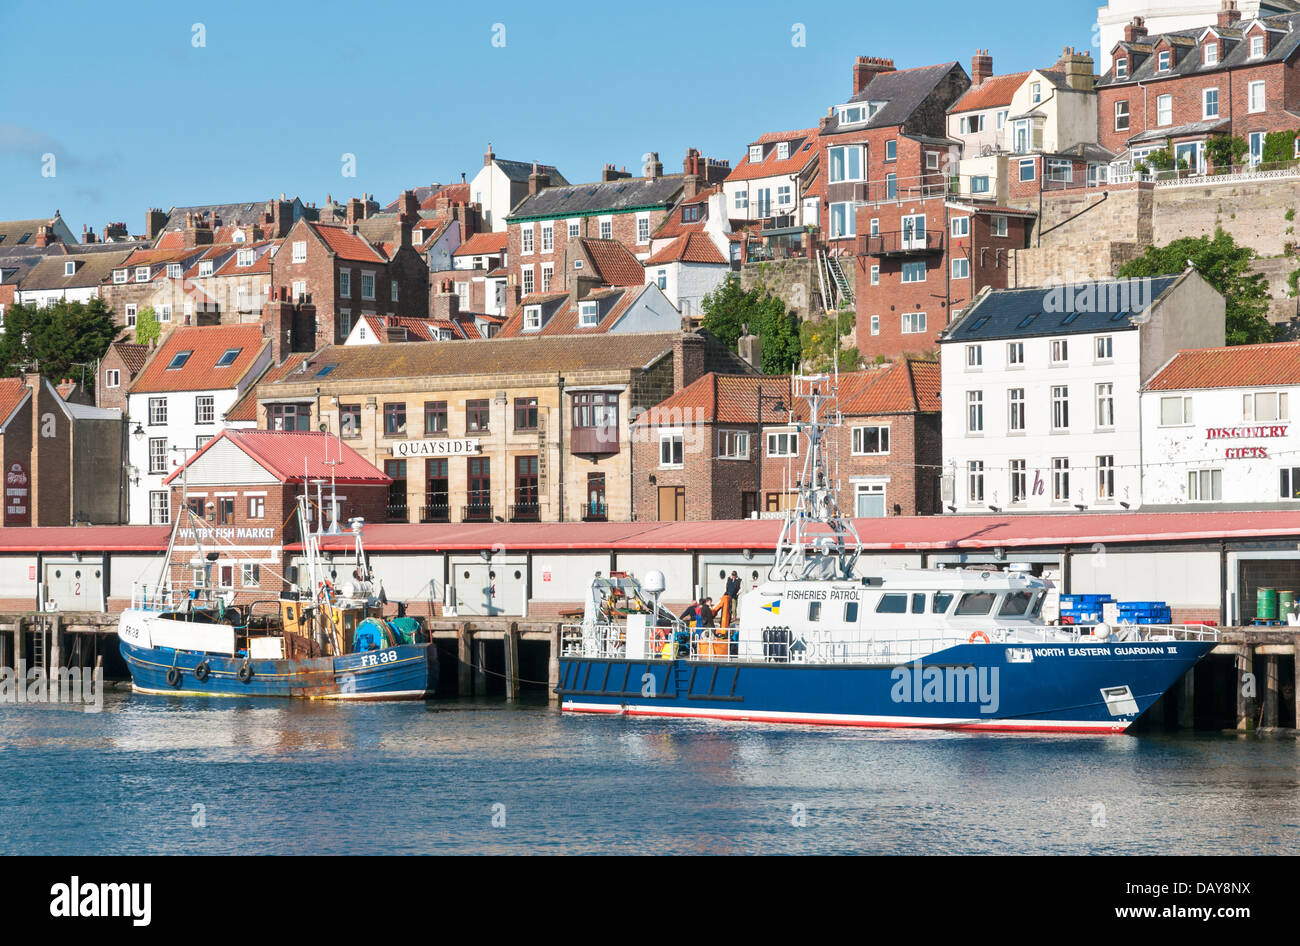 Großbritannien, England, North Yorkshire, Whitby, Fluß Esk, Hafen, Fischerei-Patrouillenboot Stockfoto